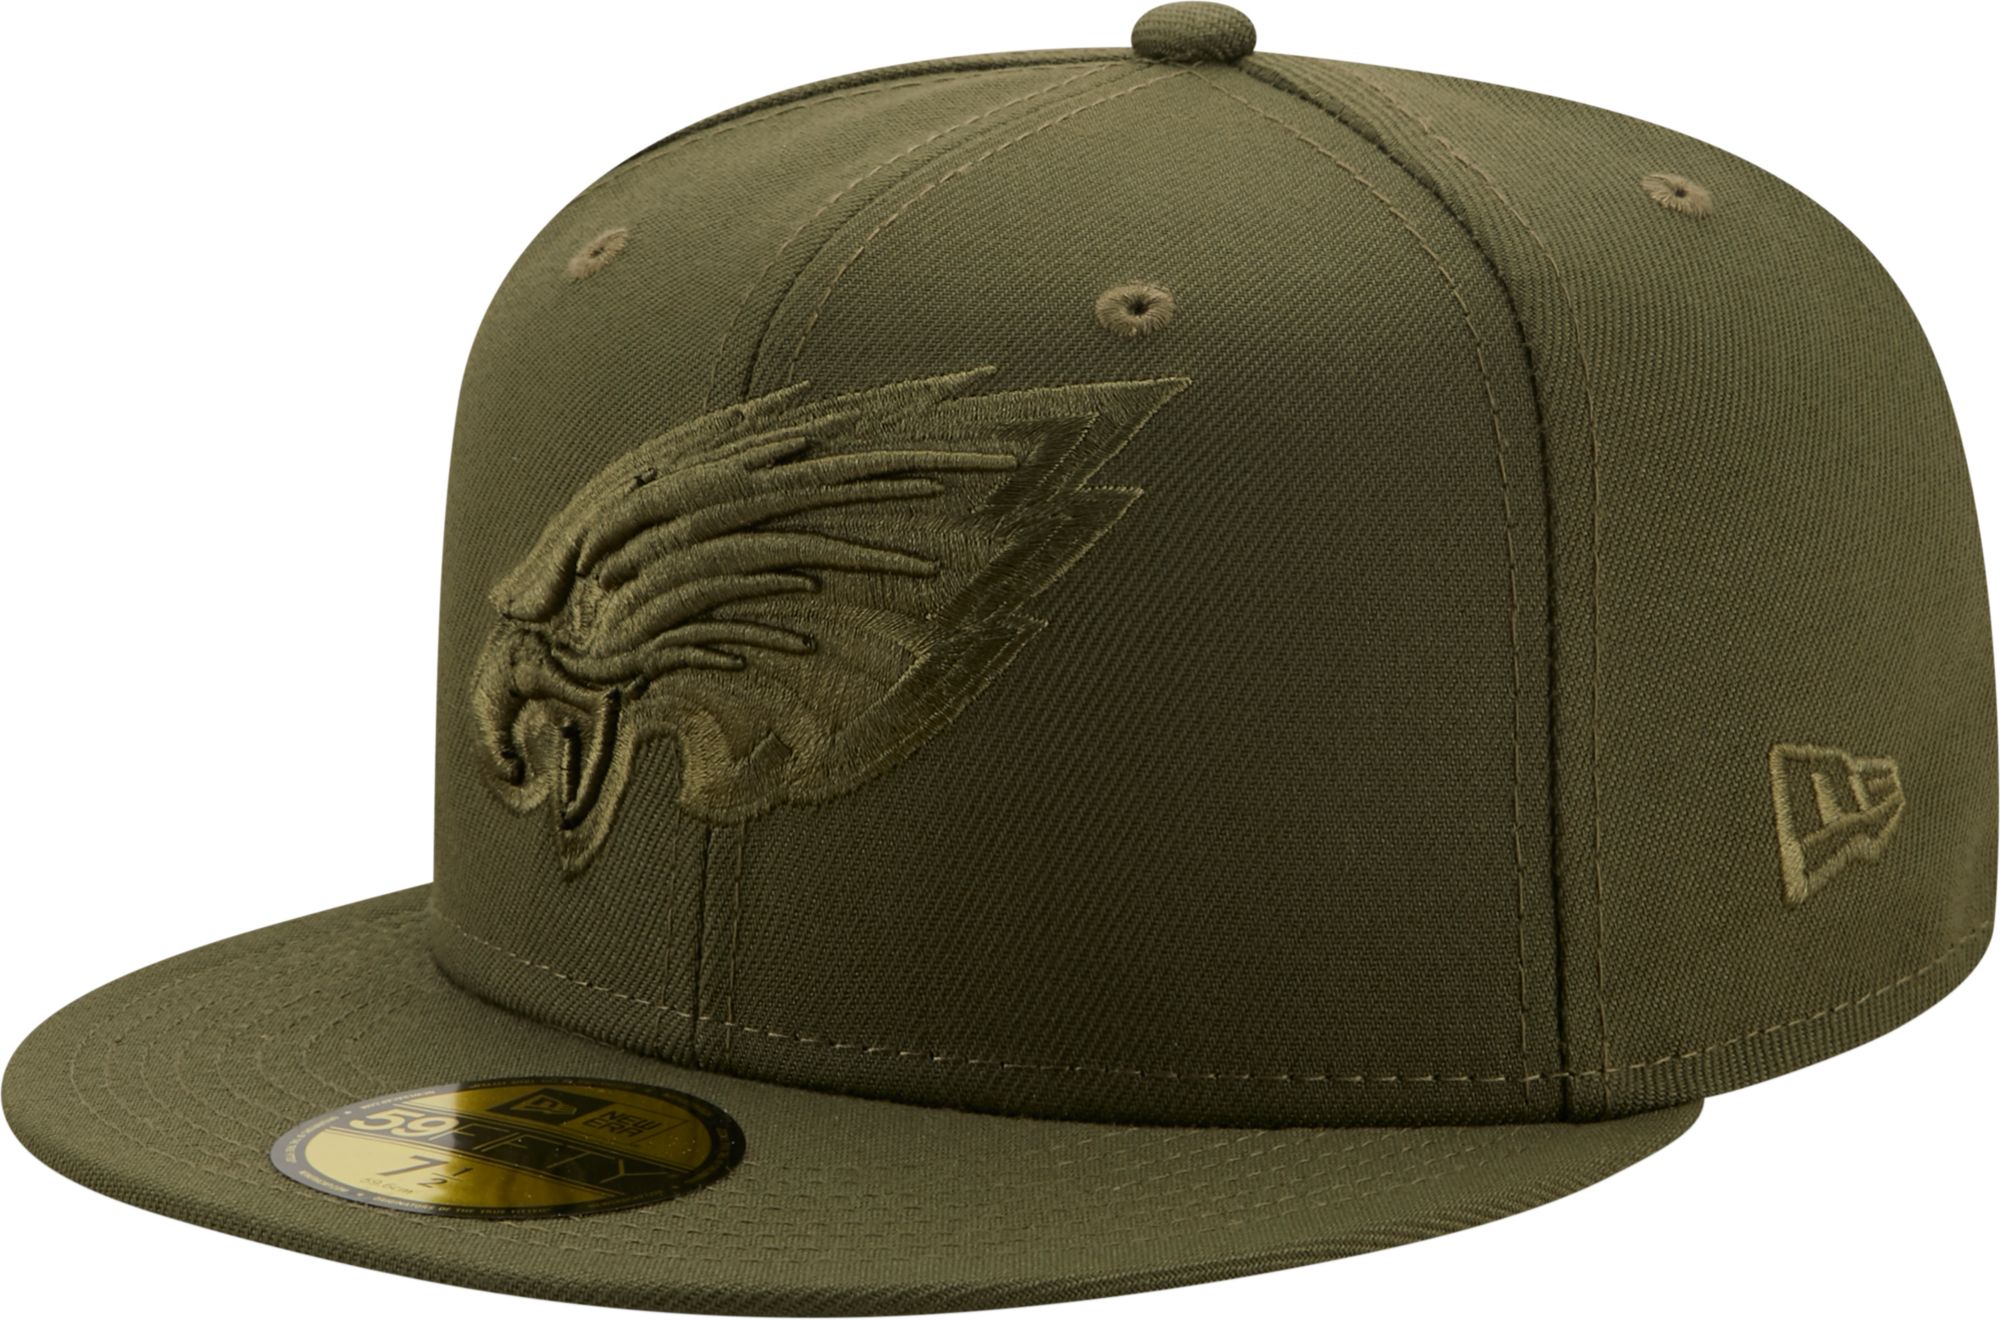 men's philadelphia eagles hat